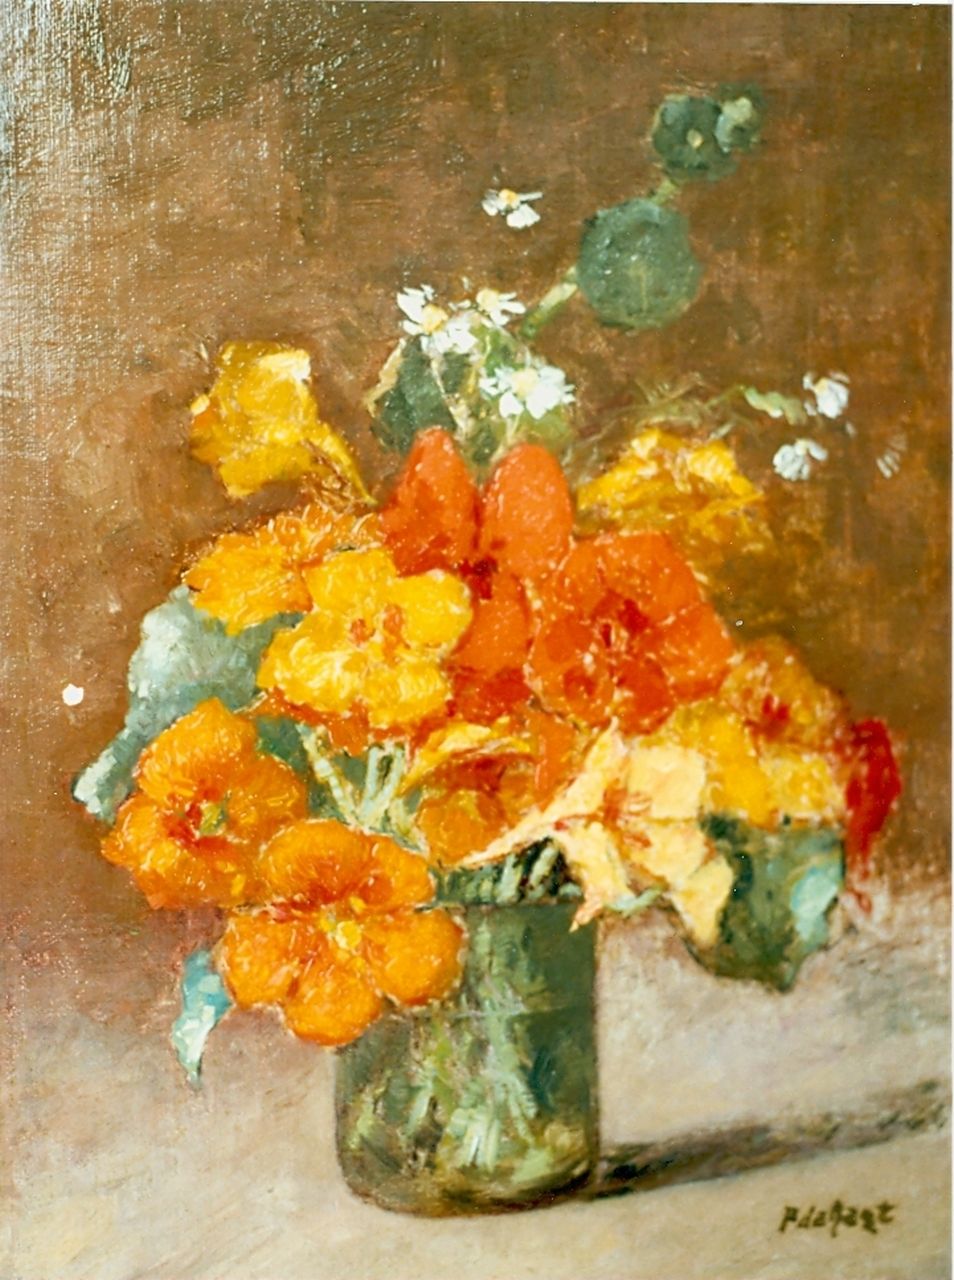 Regt P. de | Pieter 'Piet' de Regt, Flower still life, Öl auf Leinwand auf Holz 35,5 x 26,5 cm, signed l.r.